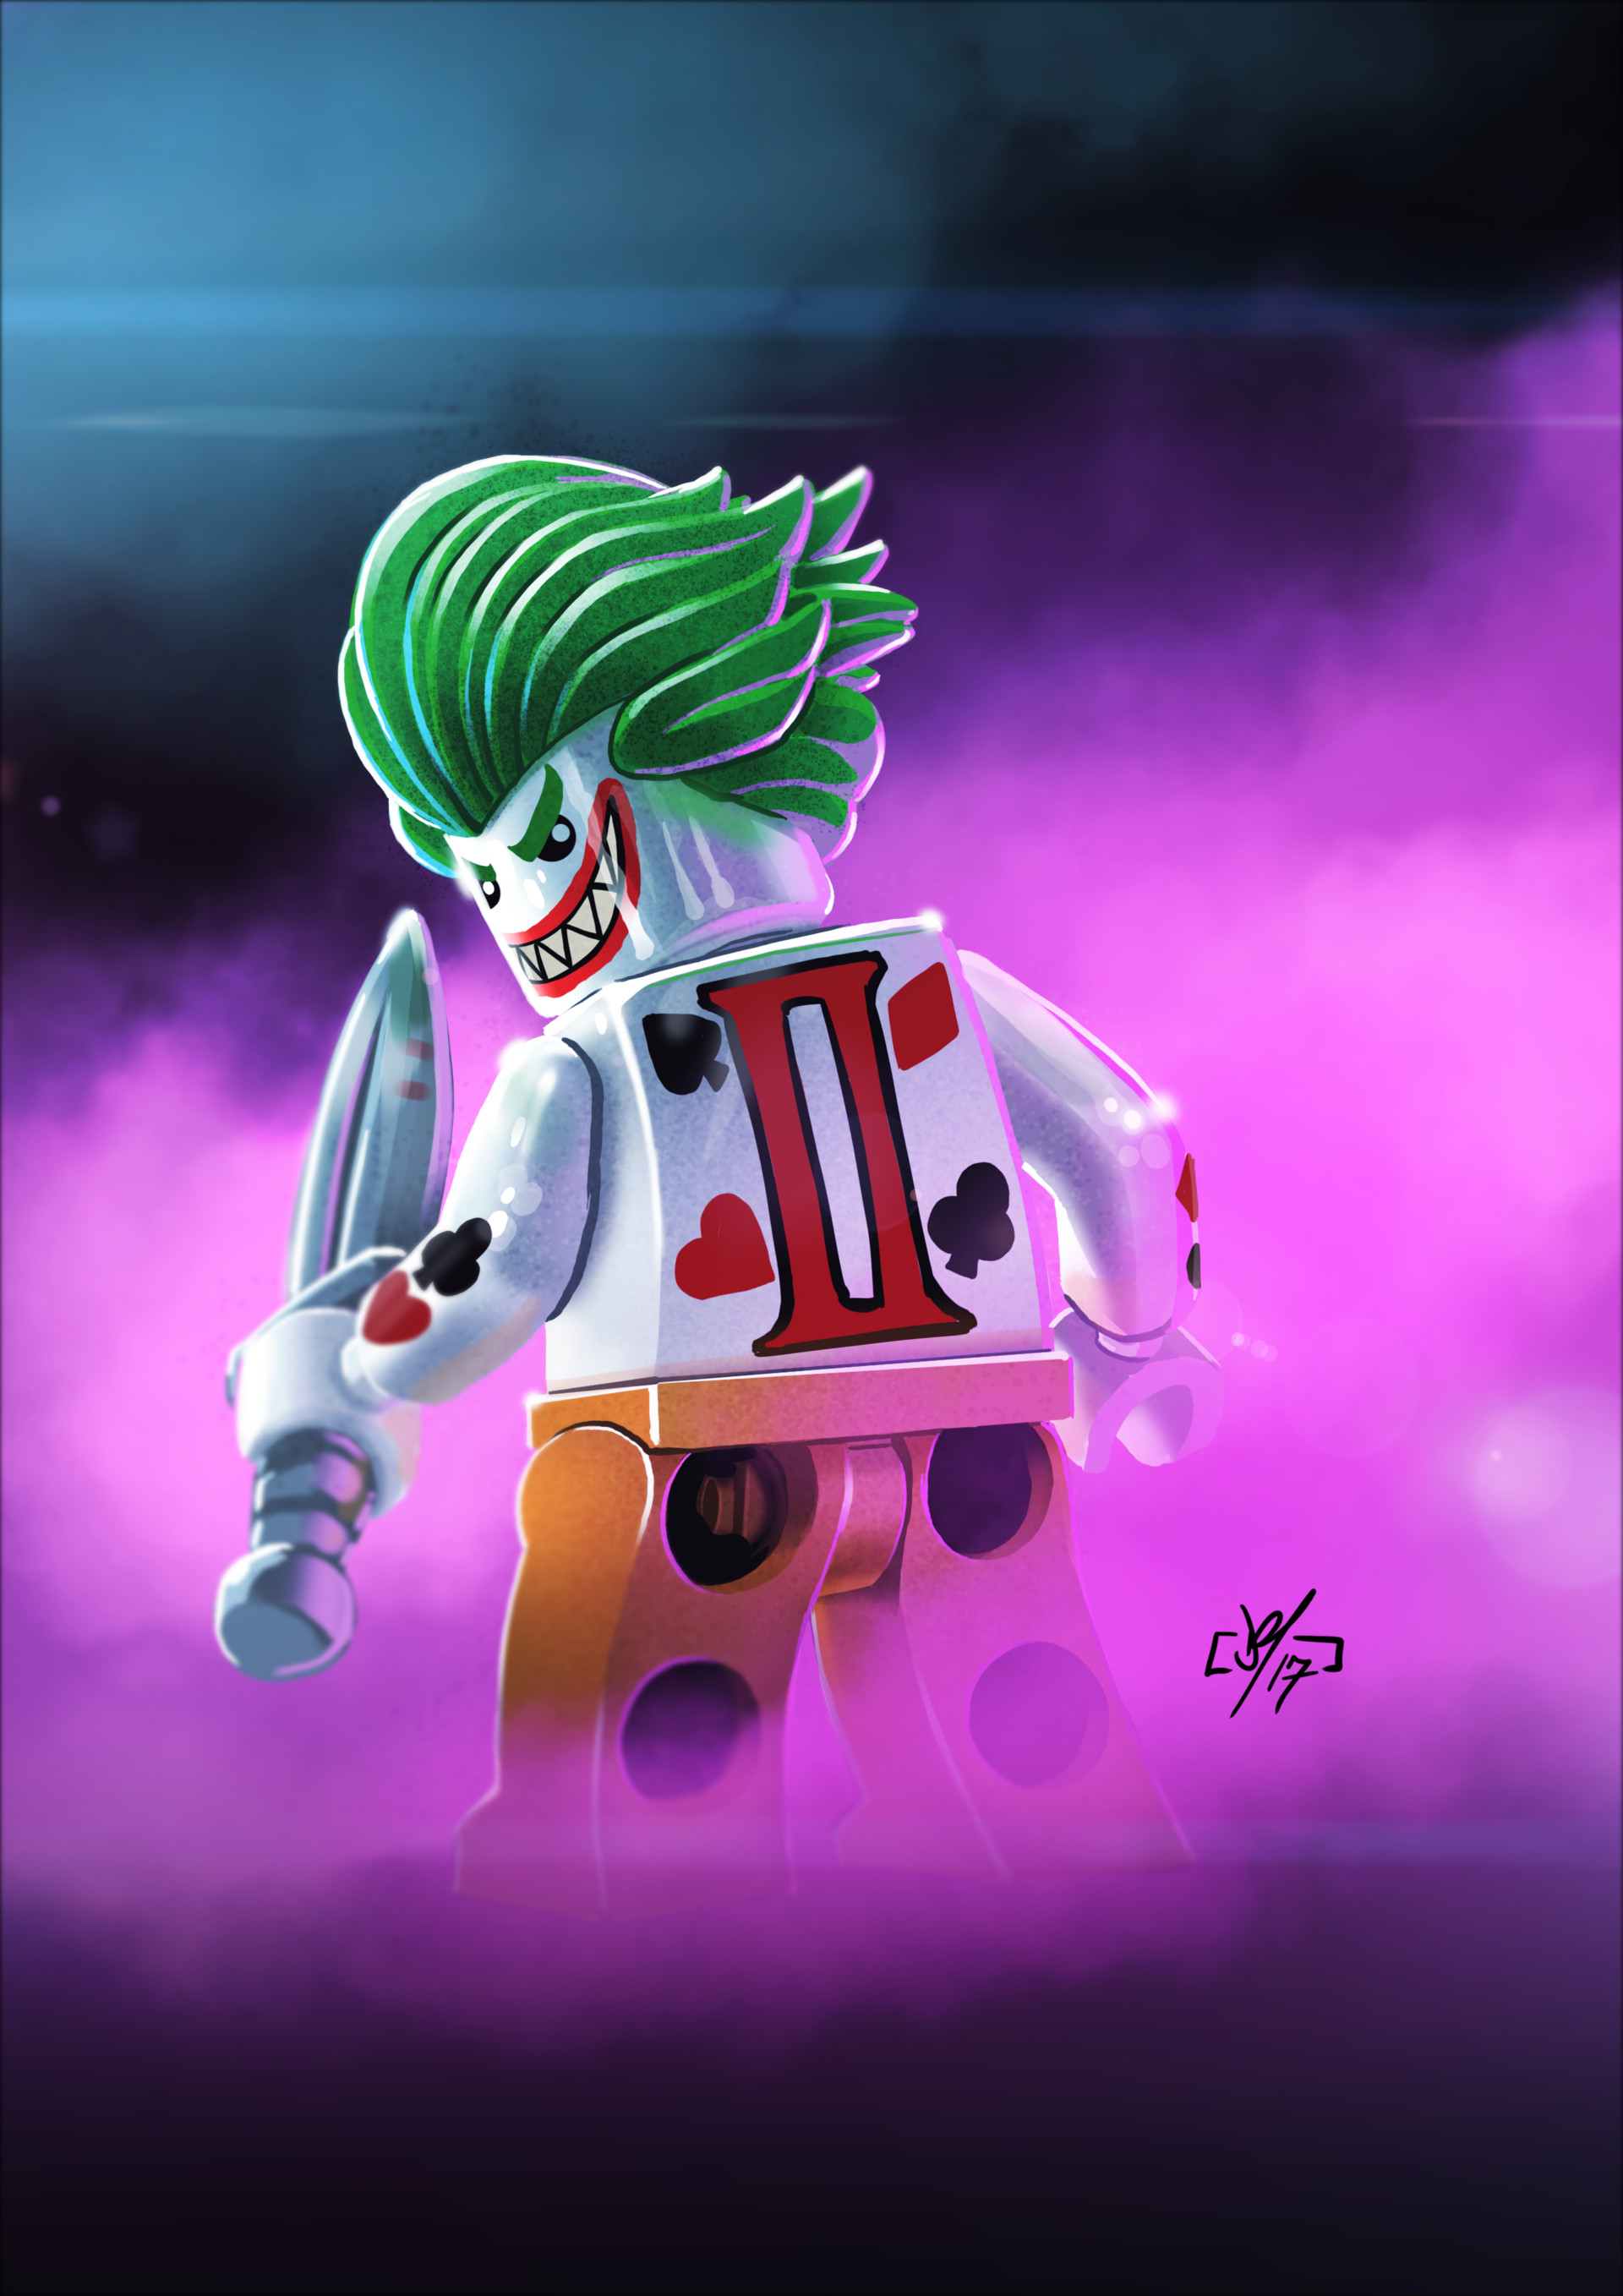 ArtStation - Lego Joker